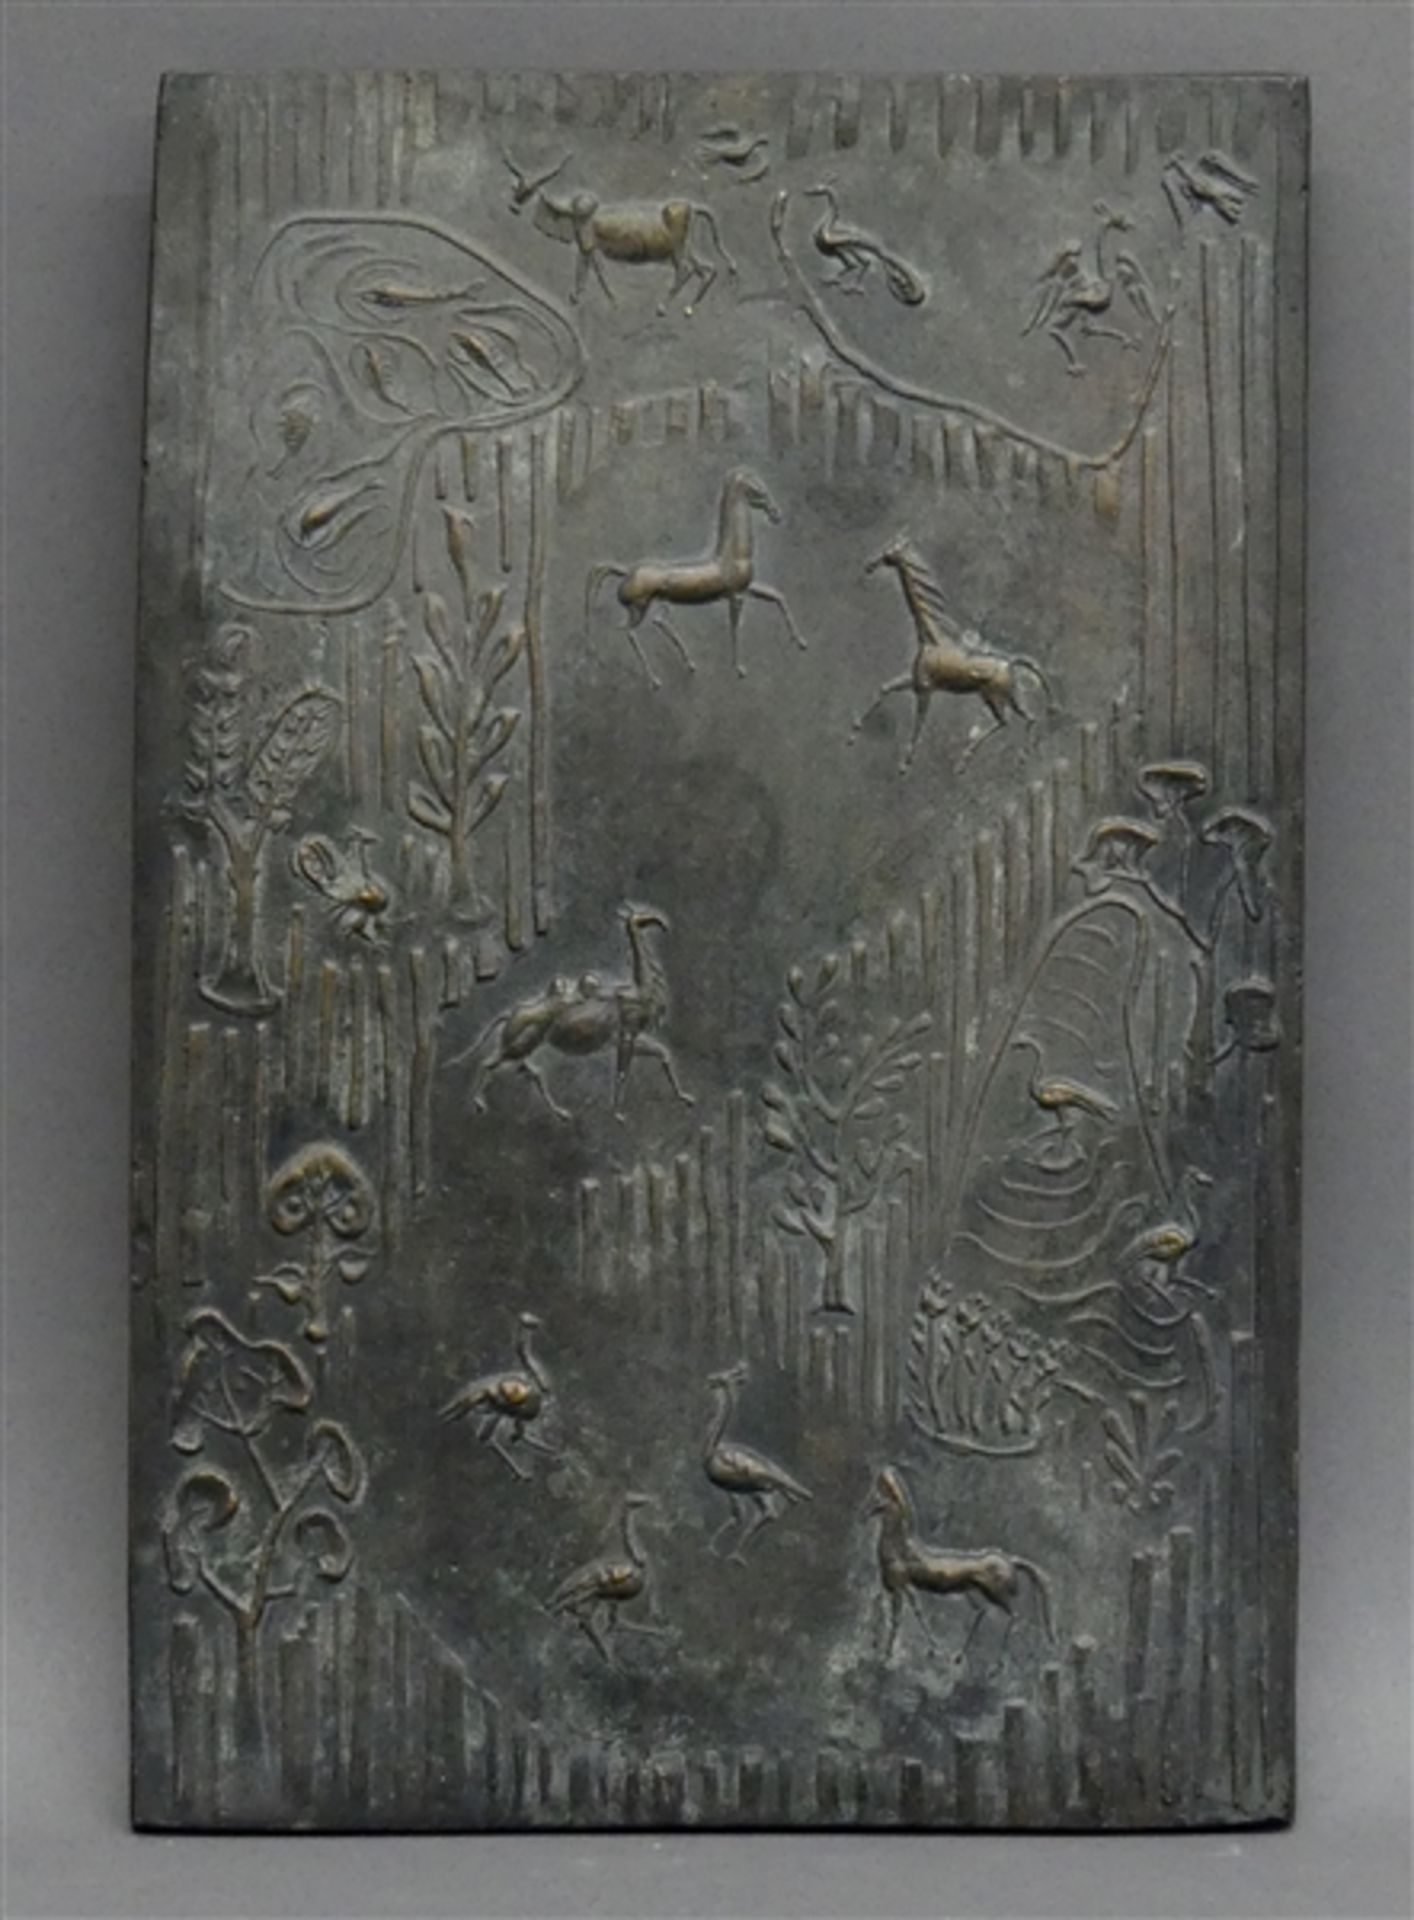 Relieftafel Bronze, von Max Faller, 1927 Neuburg a.D. - 2012 München, "Tiere und Pflanzen", 27x18